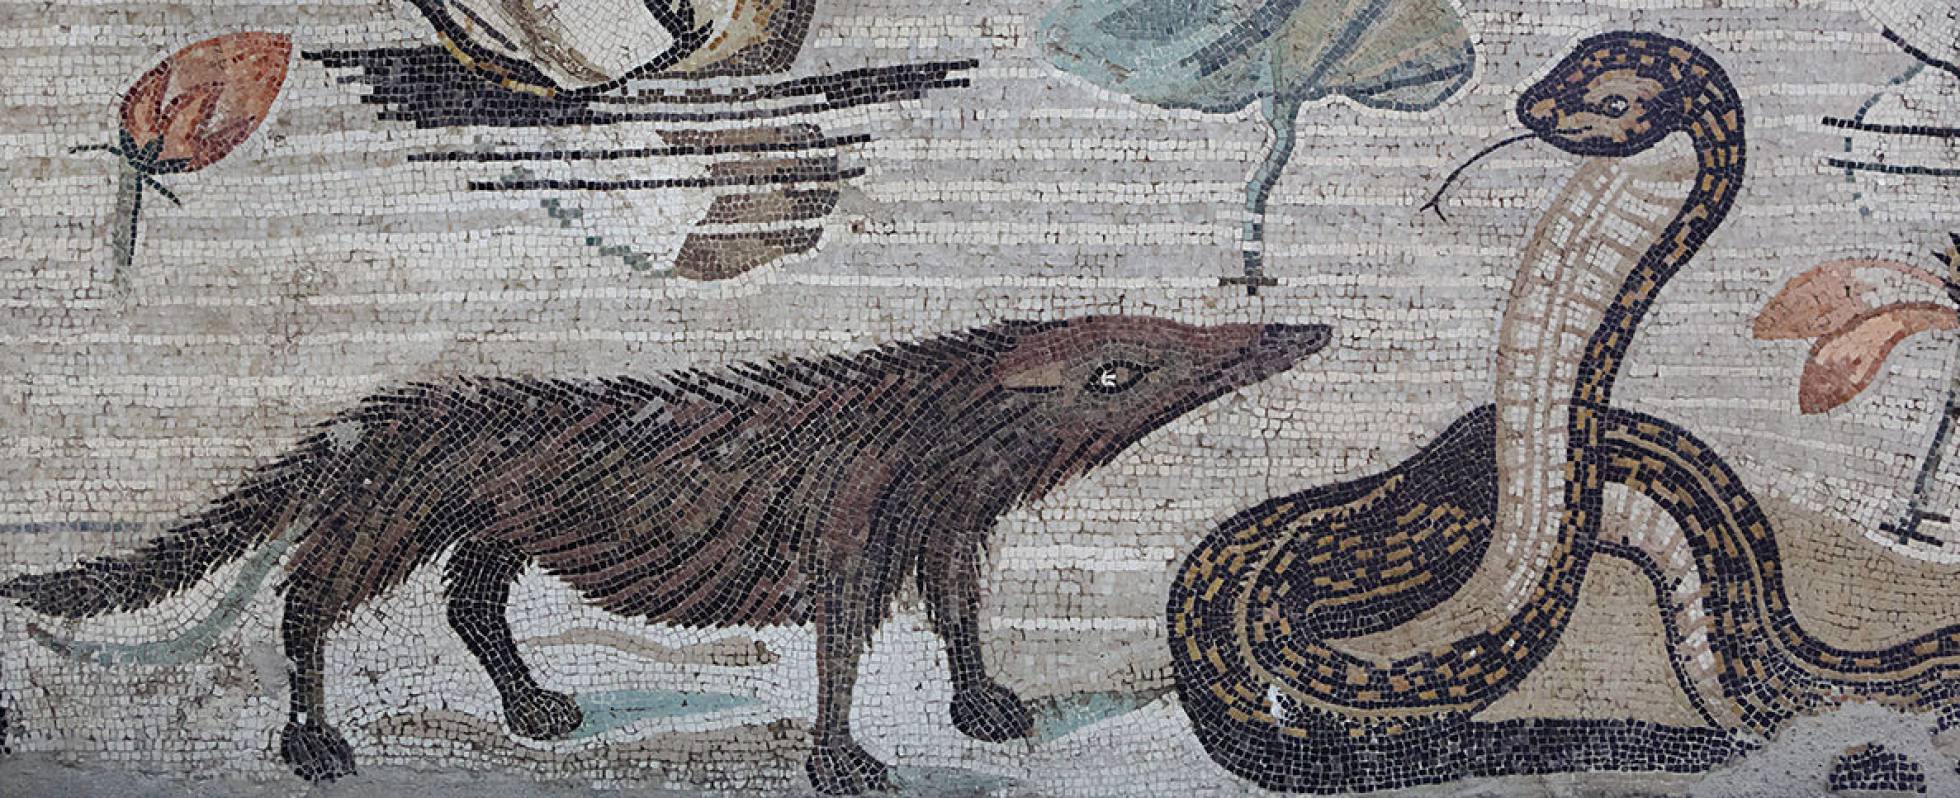 Mosaico romano en el que aparece representado un meloncillo, procedente de Pompeya.